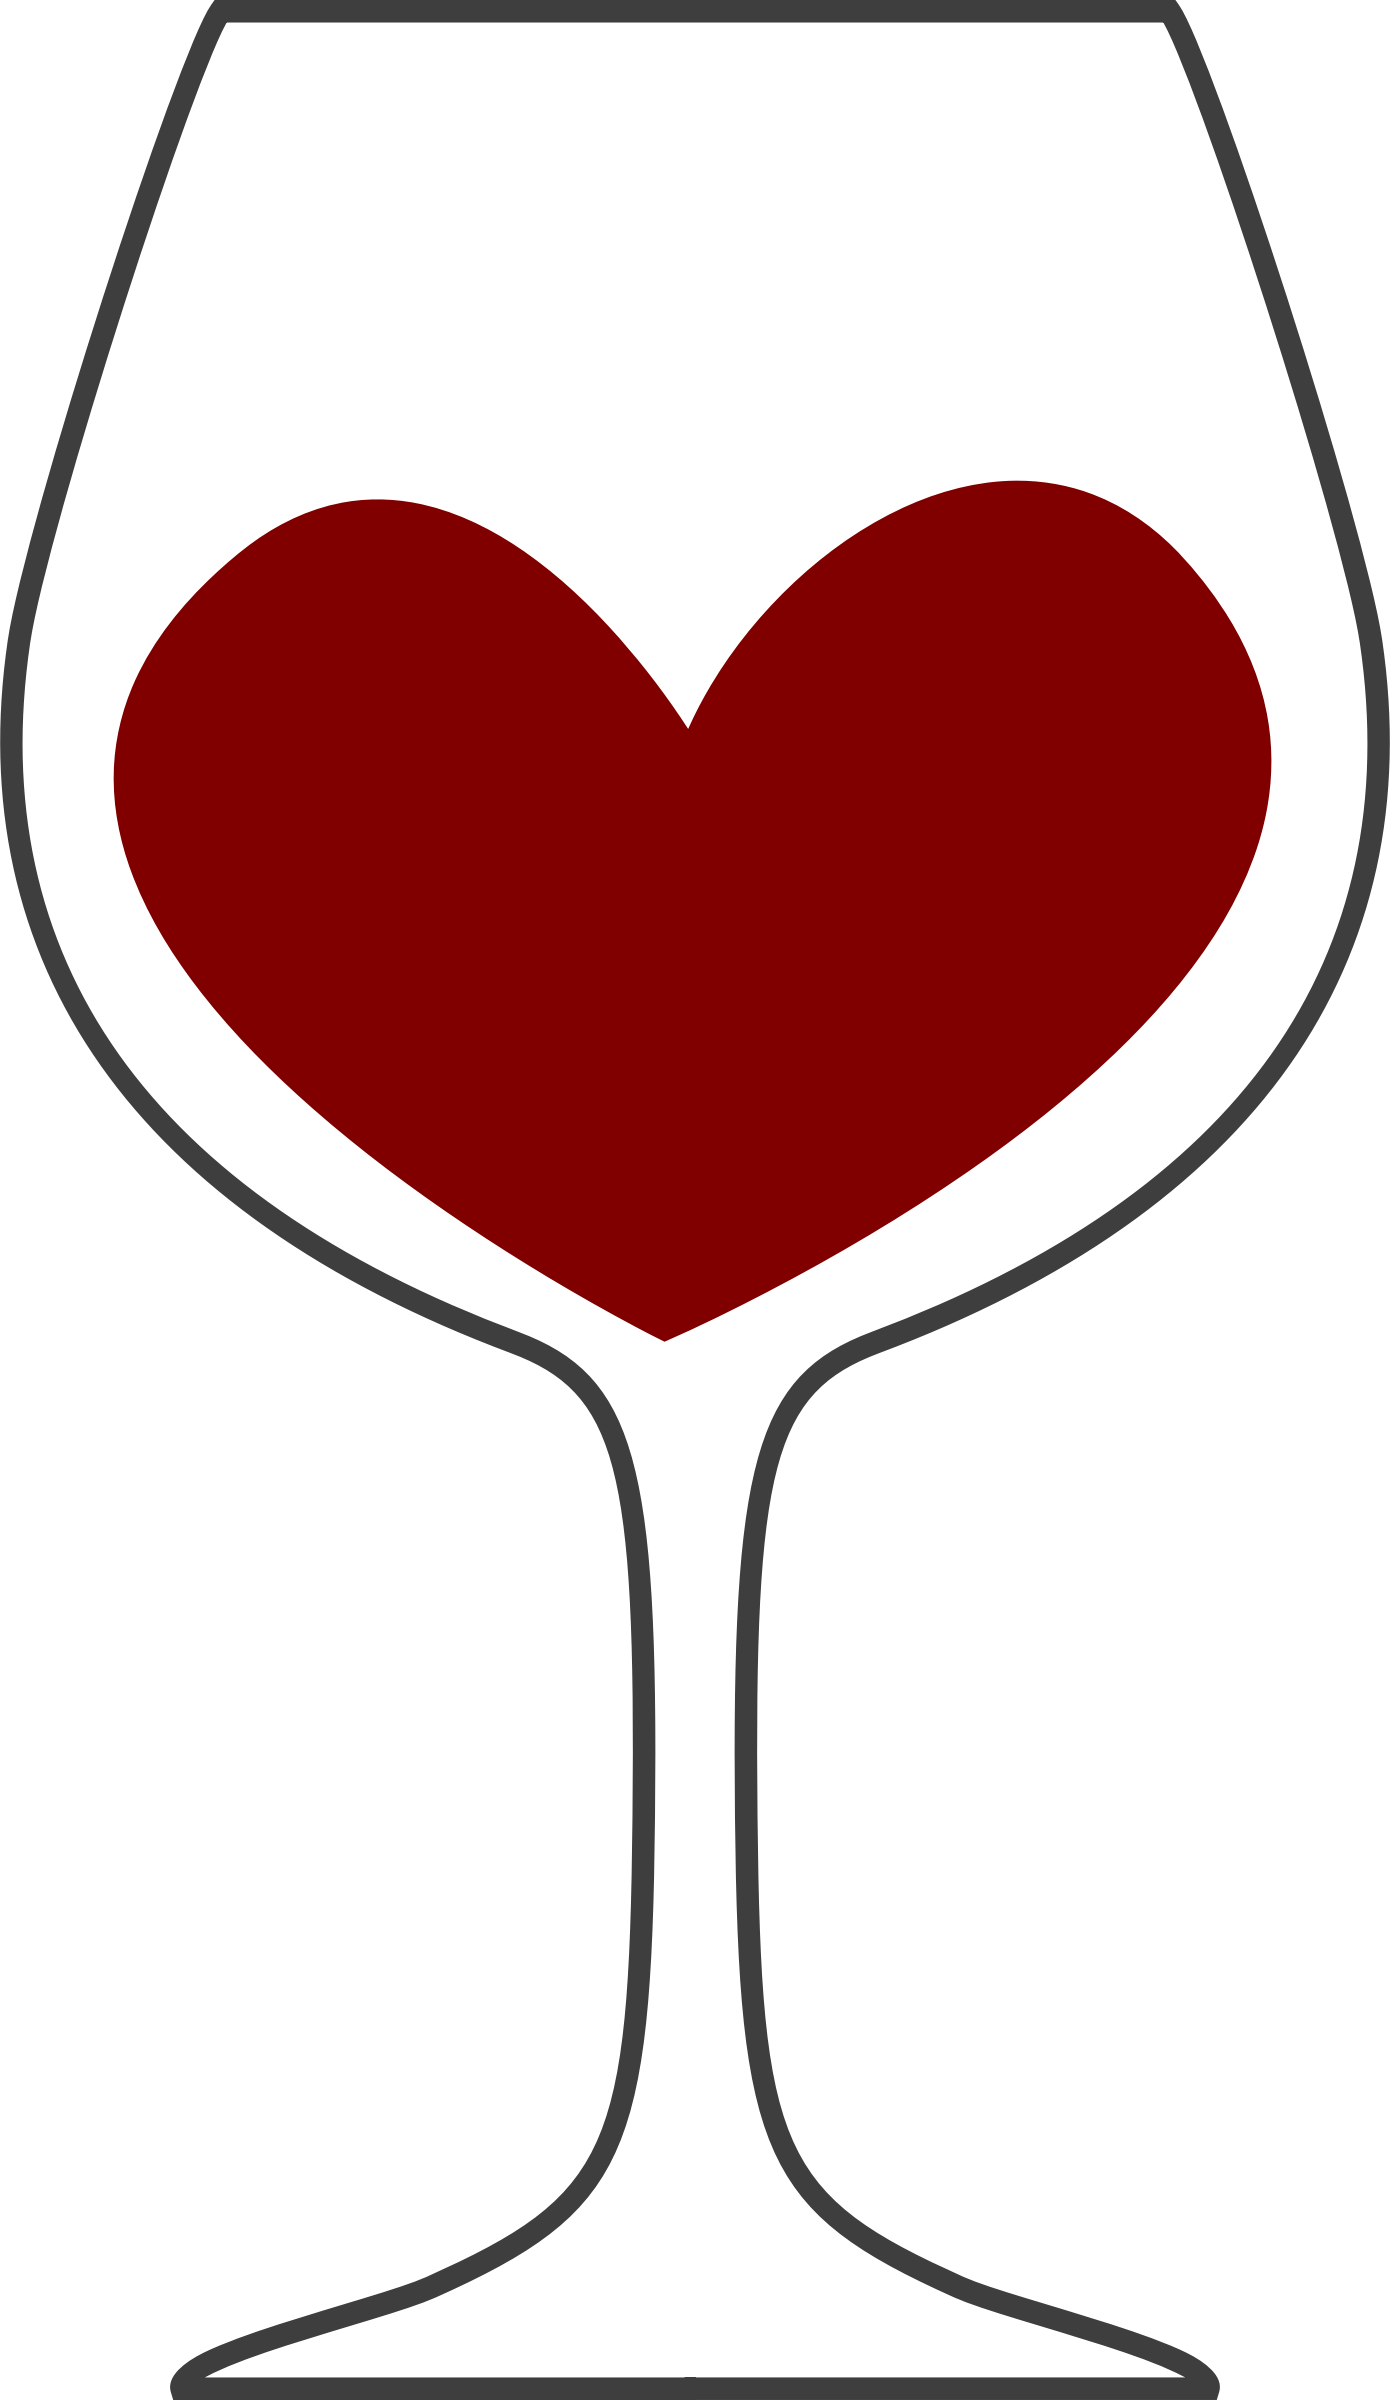 Hearts wine